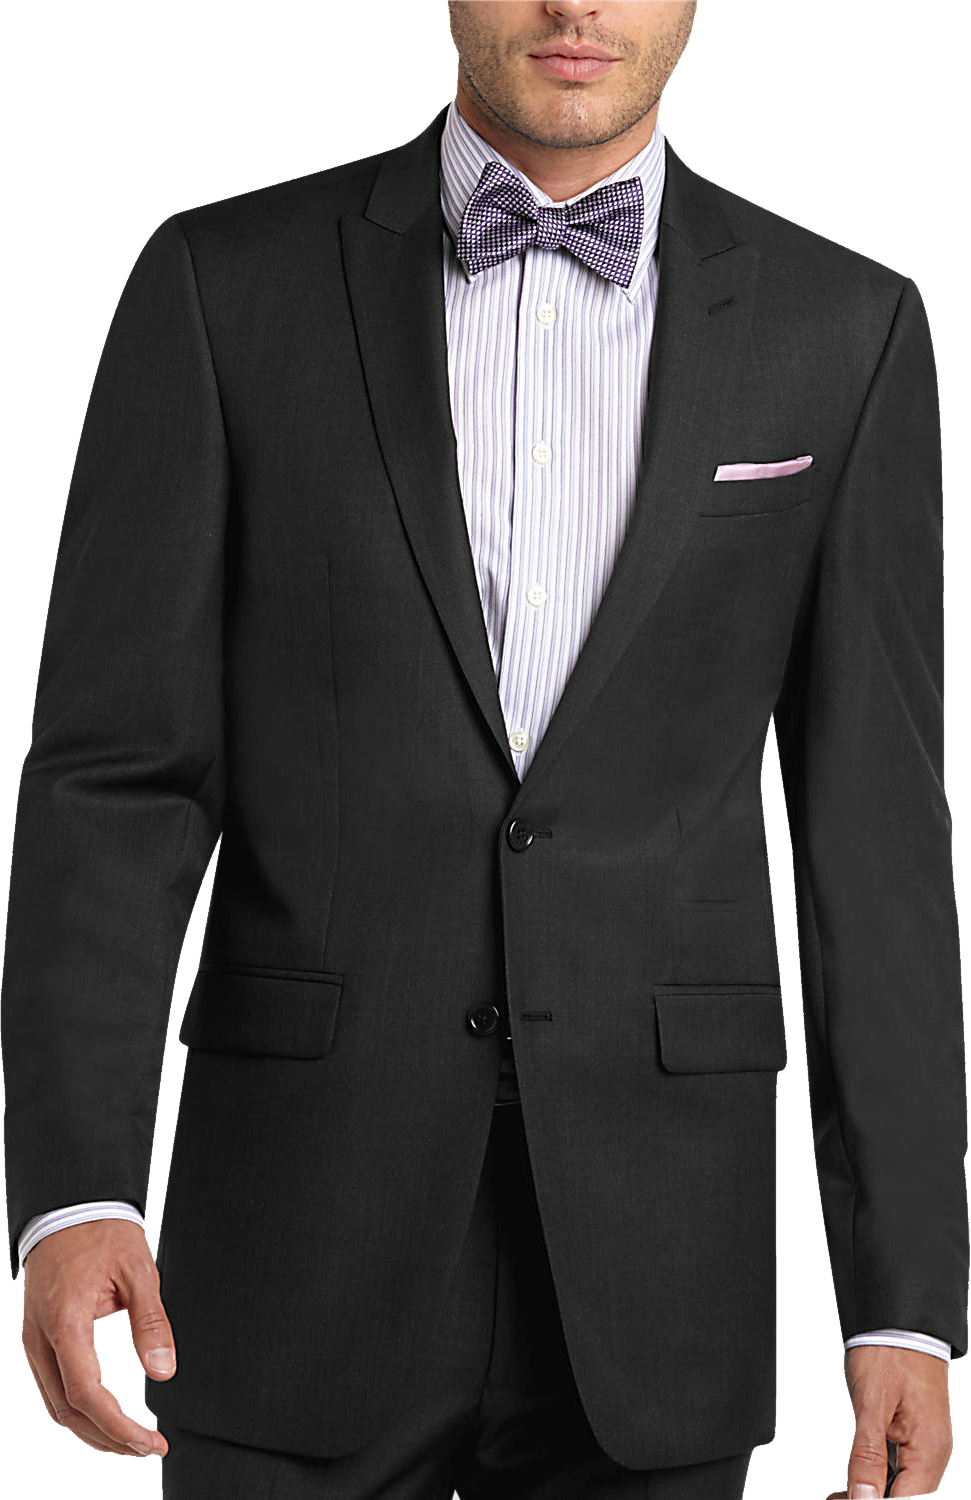 Suit Png Image - Dsquared Paris Suit (971x1500), Png Download